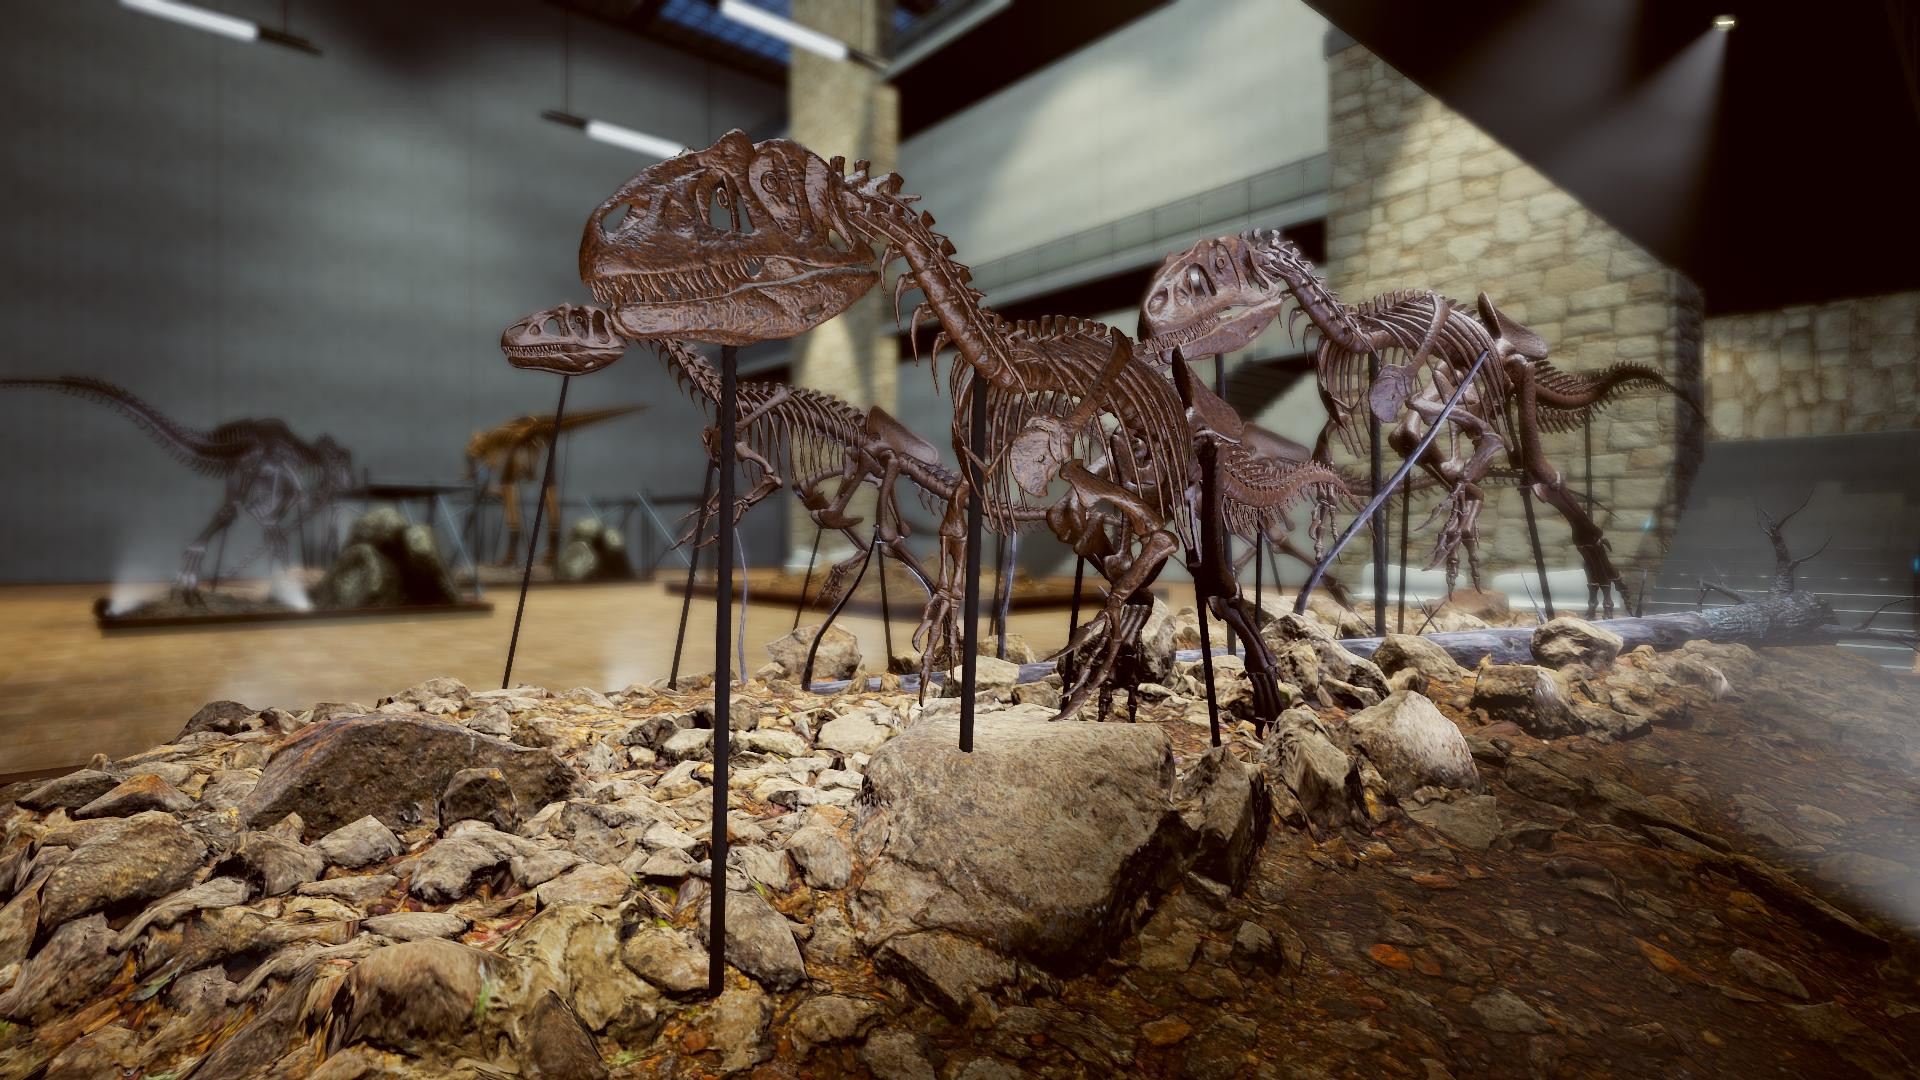 《恐龙化石猎人 古生物学模拟器》4月28日发售 支持简体中文